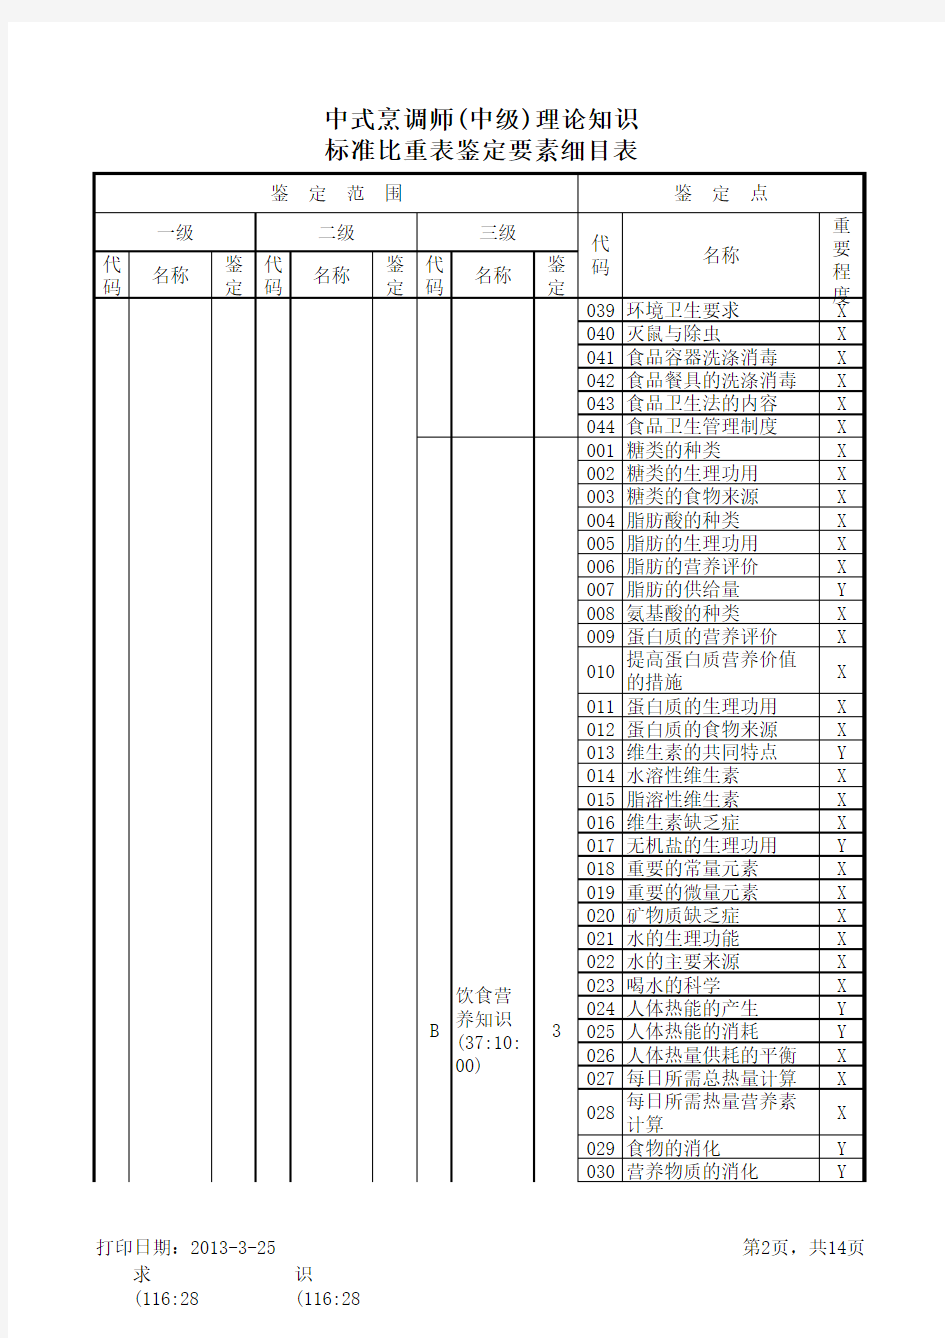 中式烹调师(中级)理论知识标准比重表鉴定要素细目表